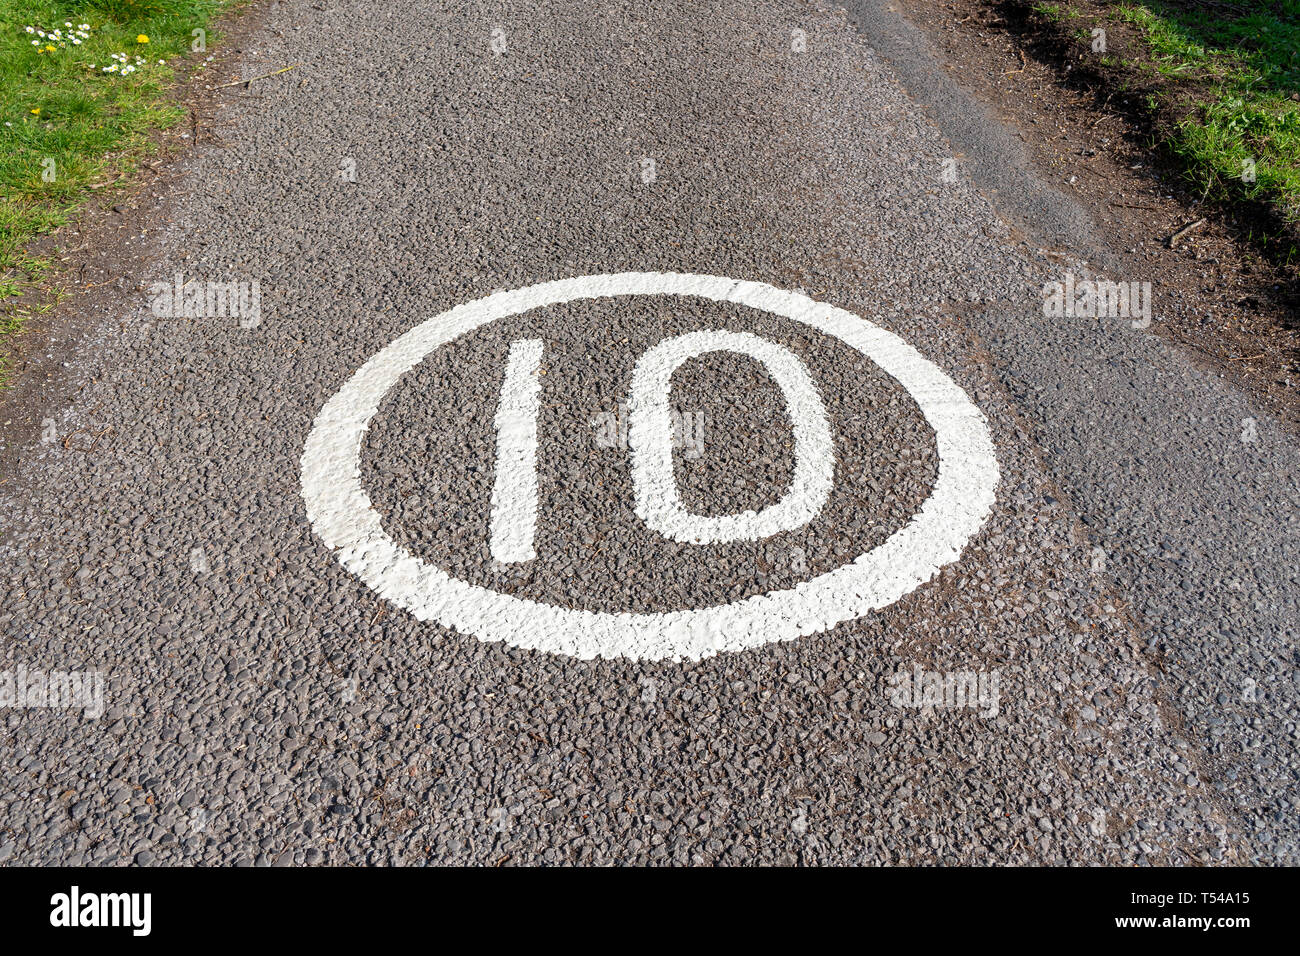 Límite de velocidad de 10 MPH signo pintado sobre la superficie de la carretera Foto de stock